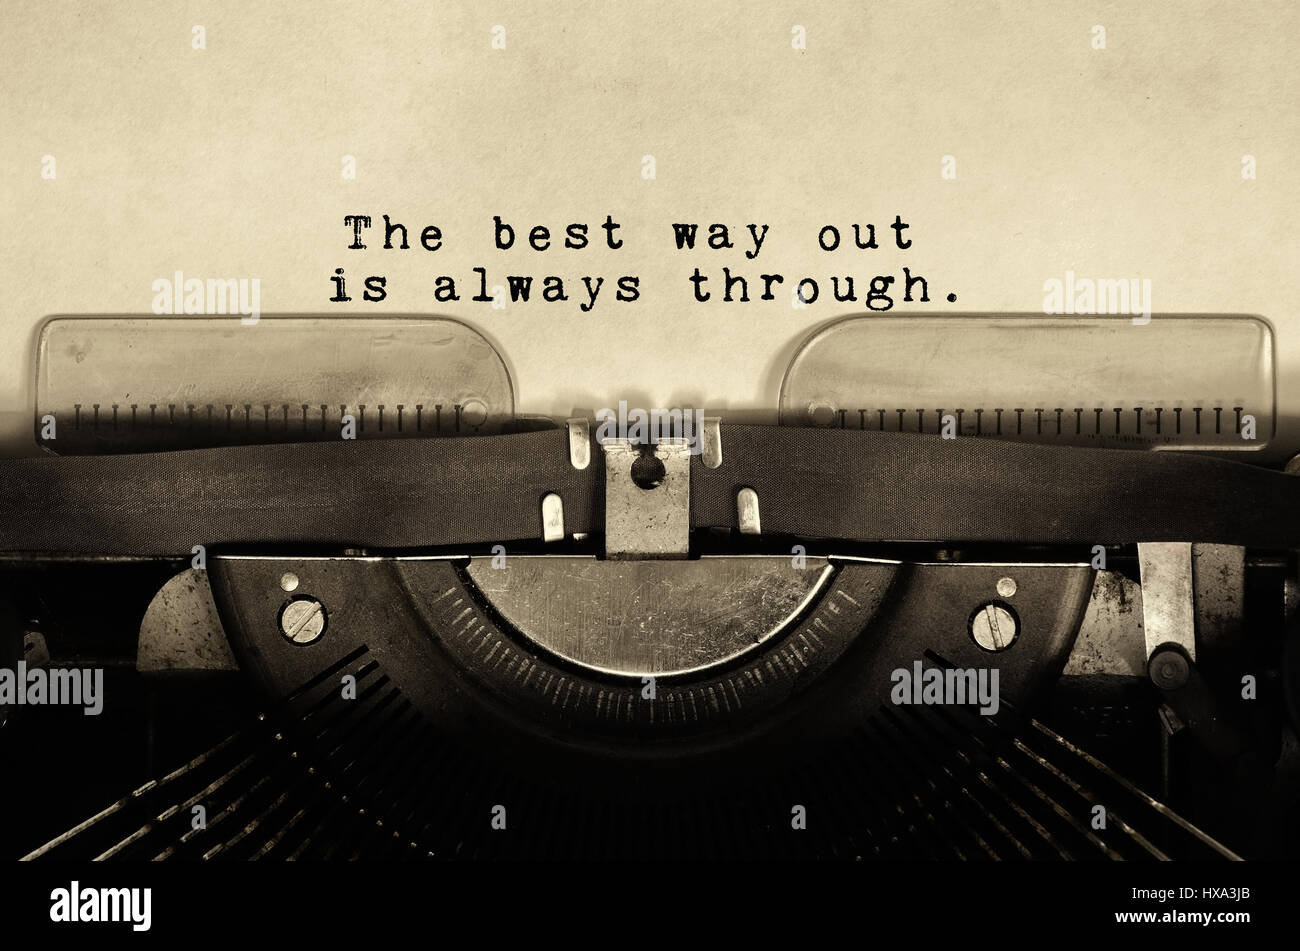 Des citations inspirantes le meilleur moyen de sortir est toujours par dactylographié sur vintage typewriter Banque D'Images